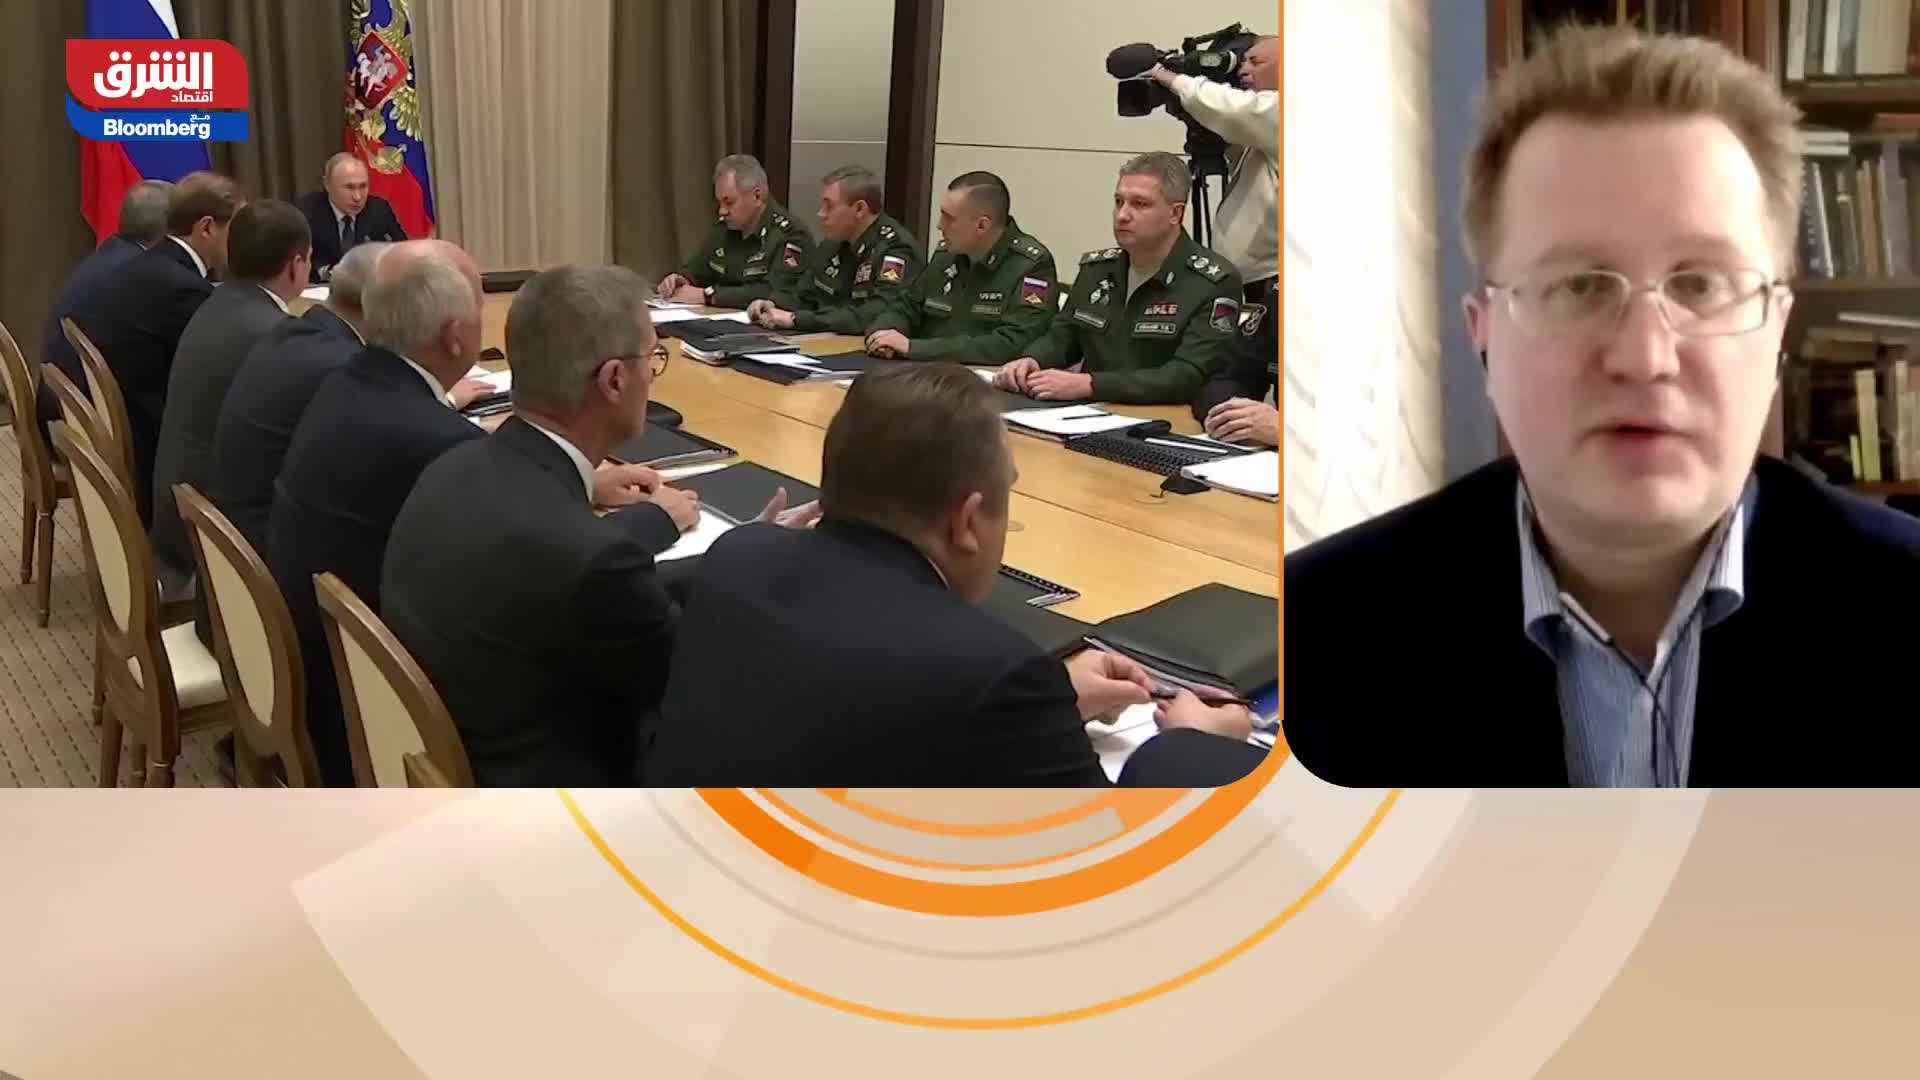 ستانيسلاف ميتراخوفيتش : لا اتفاق يمكن التوصل إليه من دون روسيا